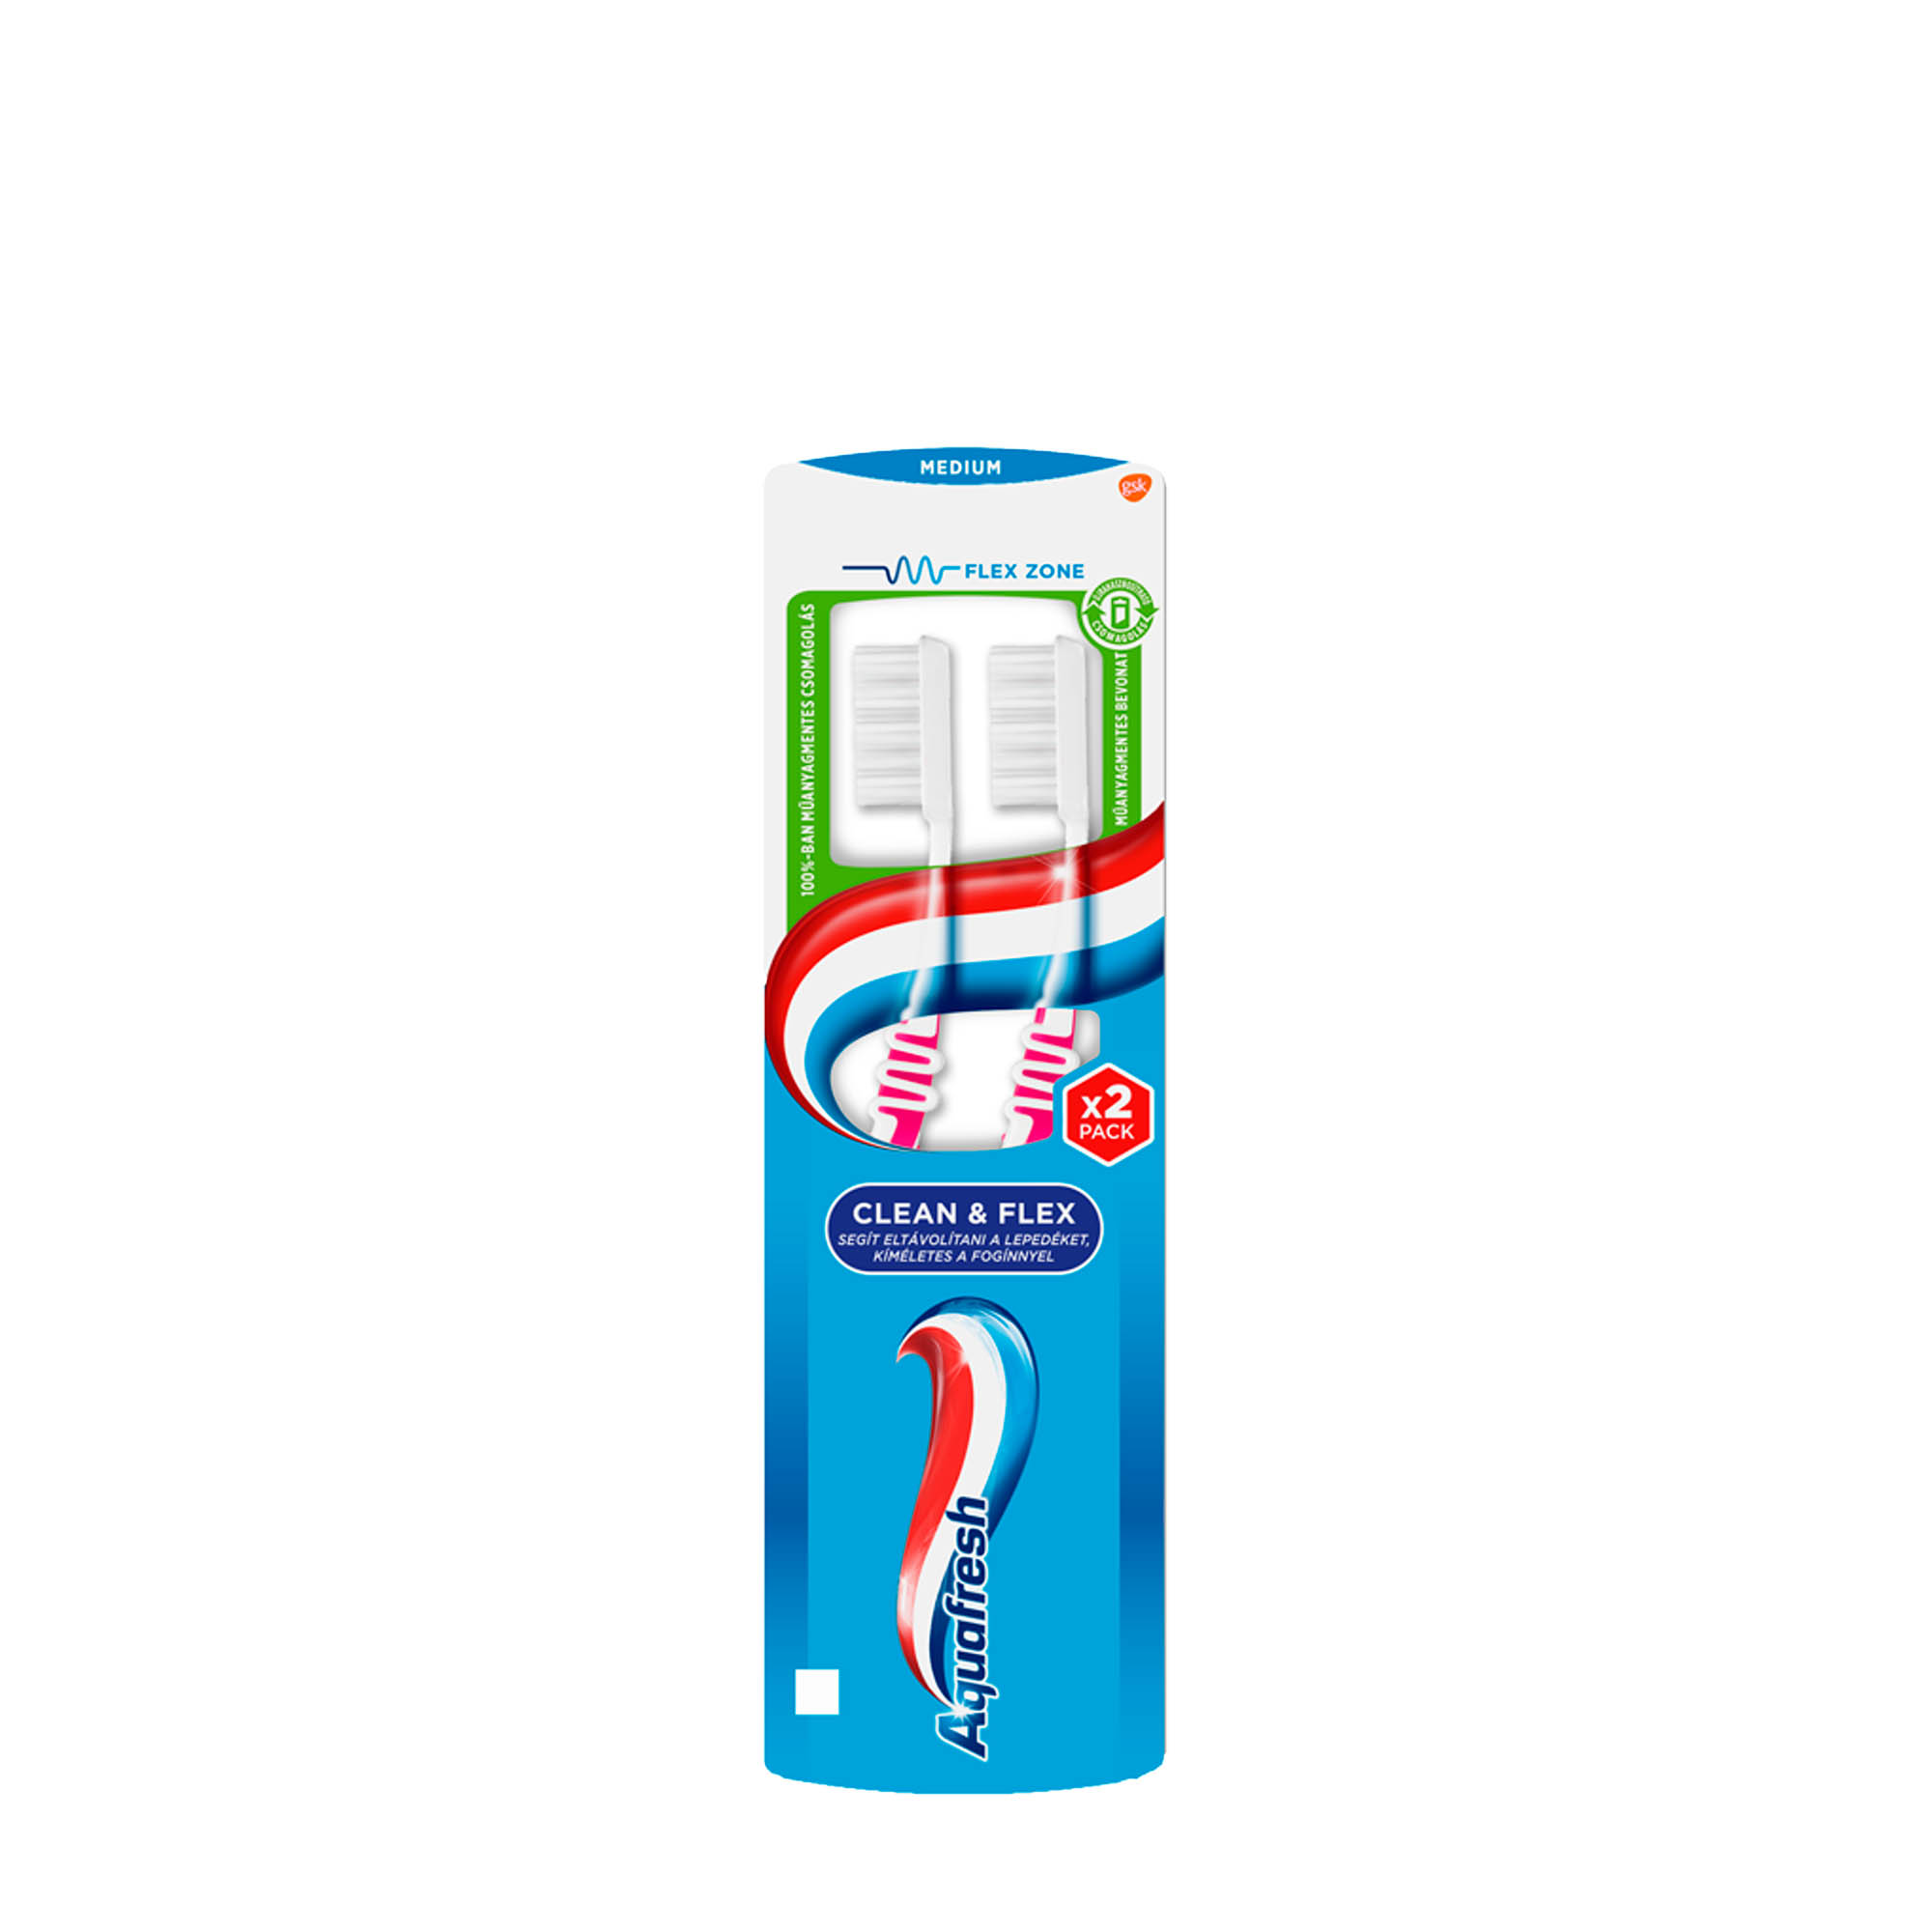 aquafresh manual toothbrush clean flex medium duopack